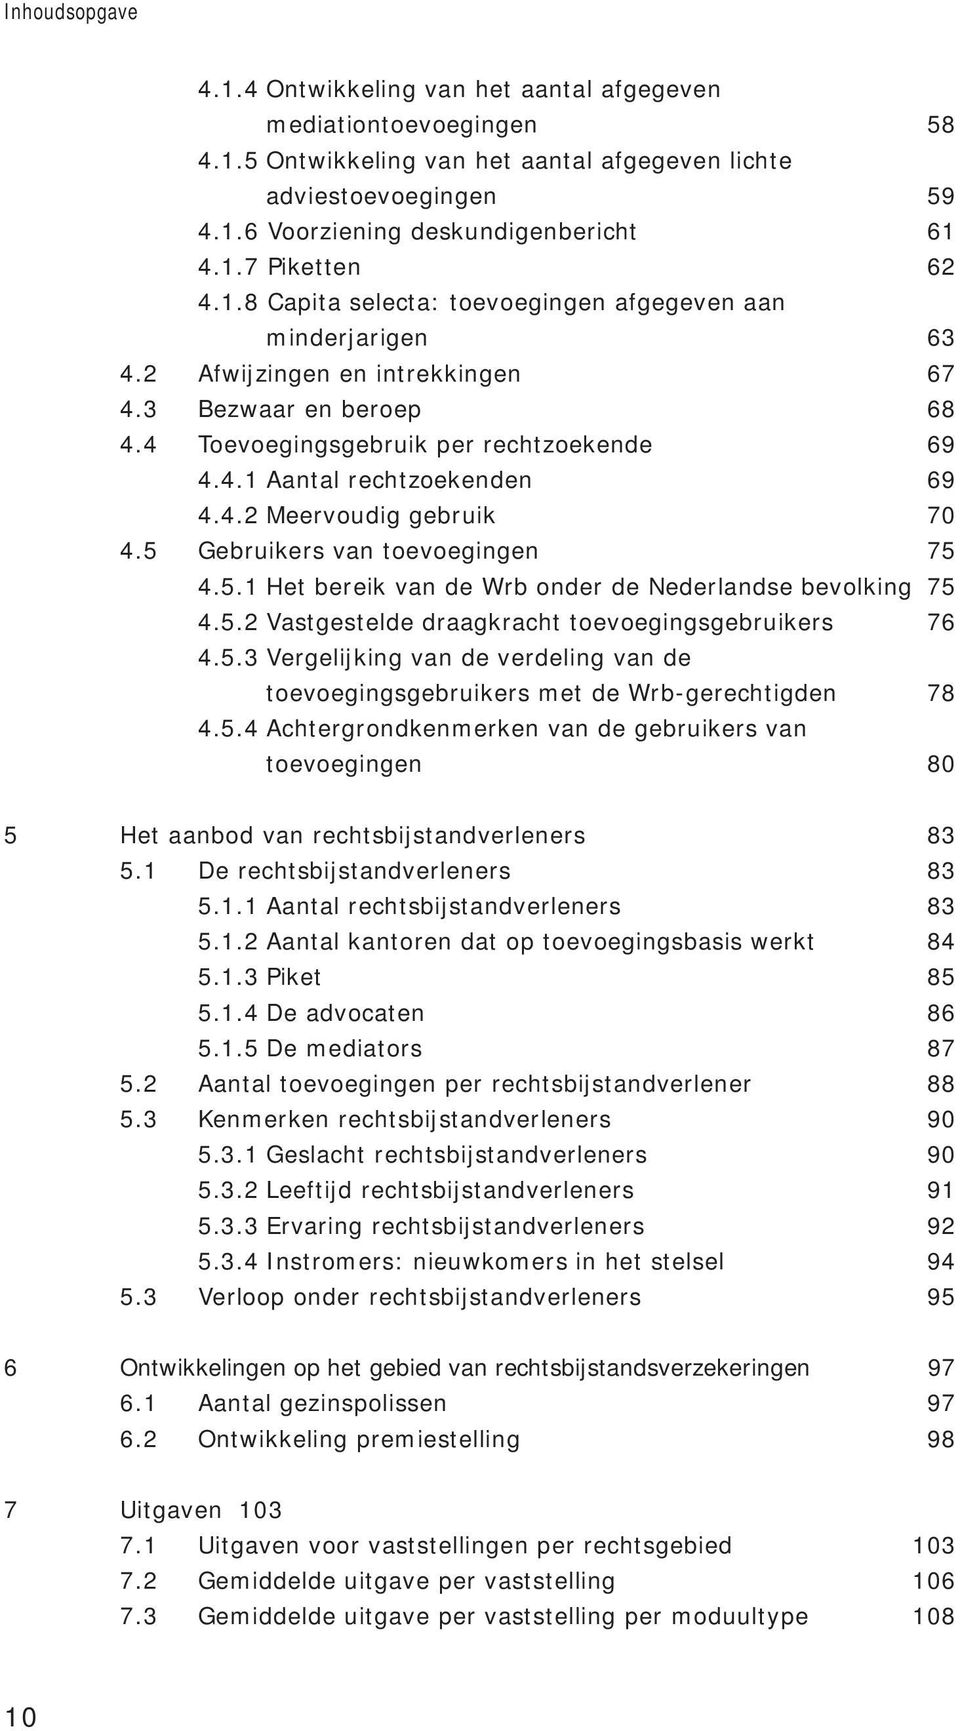 4.2 Meervoudig gebruik 70 4.5 Gebruikers van toevoegingen 75 4.5.1 Het bereik van de Wrb onder de Nederlandse bevolking 75 4.5.2 Vastgestelde draagkracht toevoegingsgebruikers 76 4.5.3 Vergelijking van de verdeling van de toevoegingsgebruikers met de Wrb-gerechtigden 78 4.